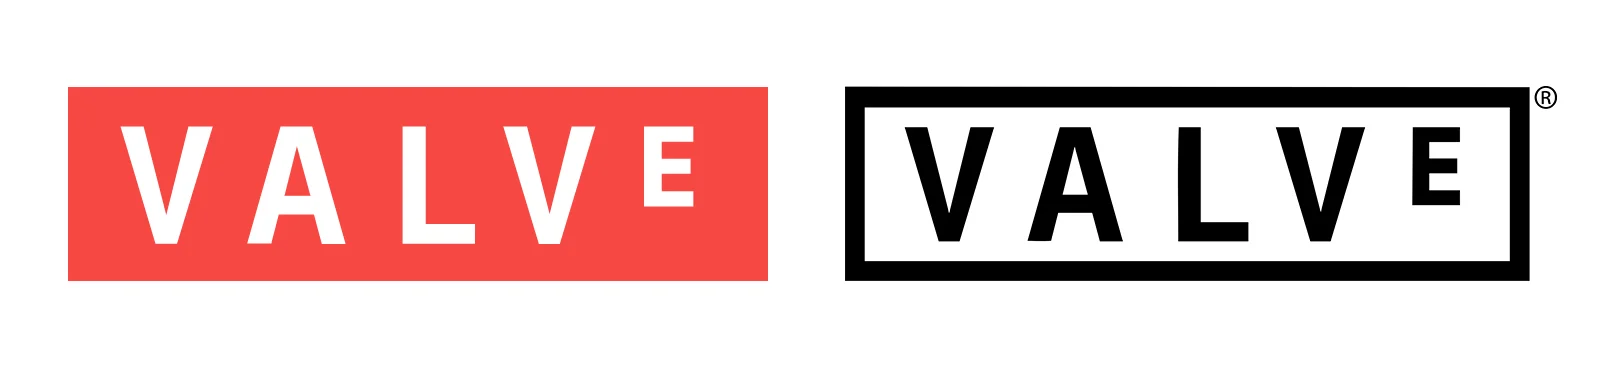 Valve обновила логотип и ищет сотрудников для секретного проекта - фото 1